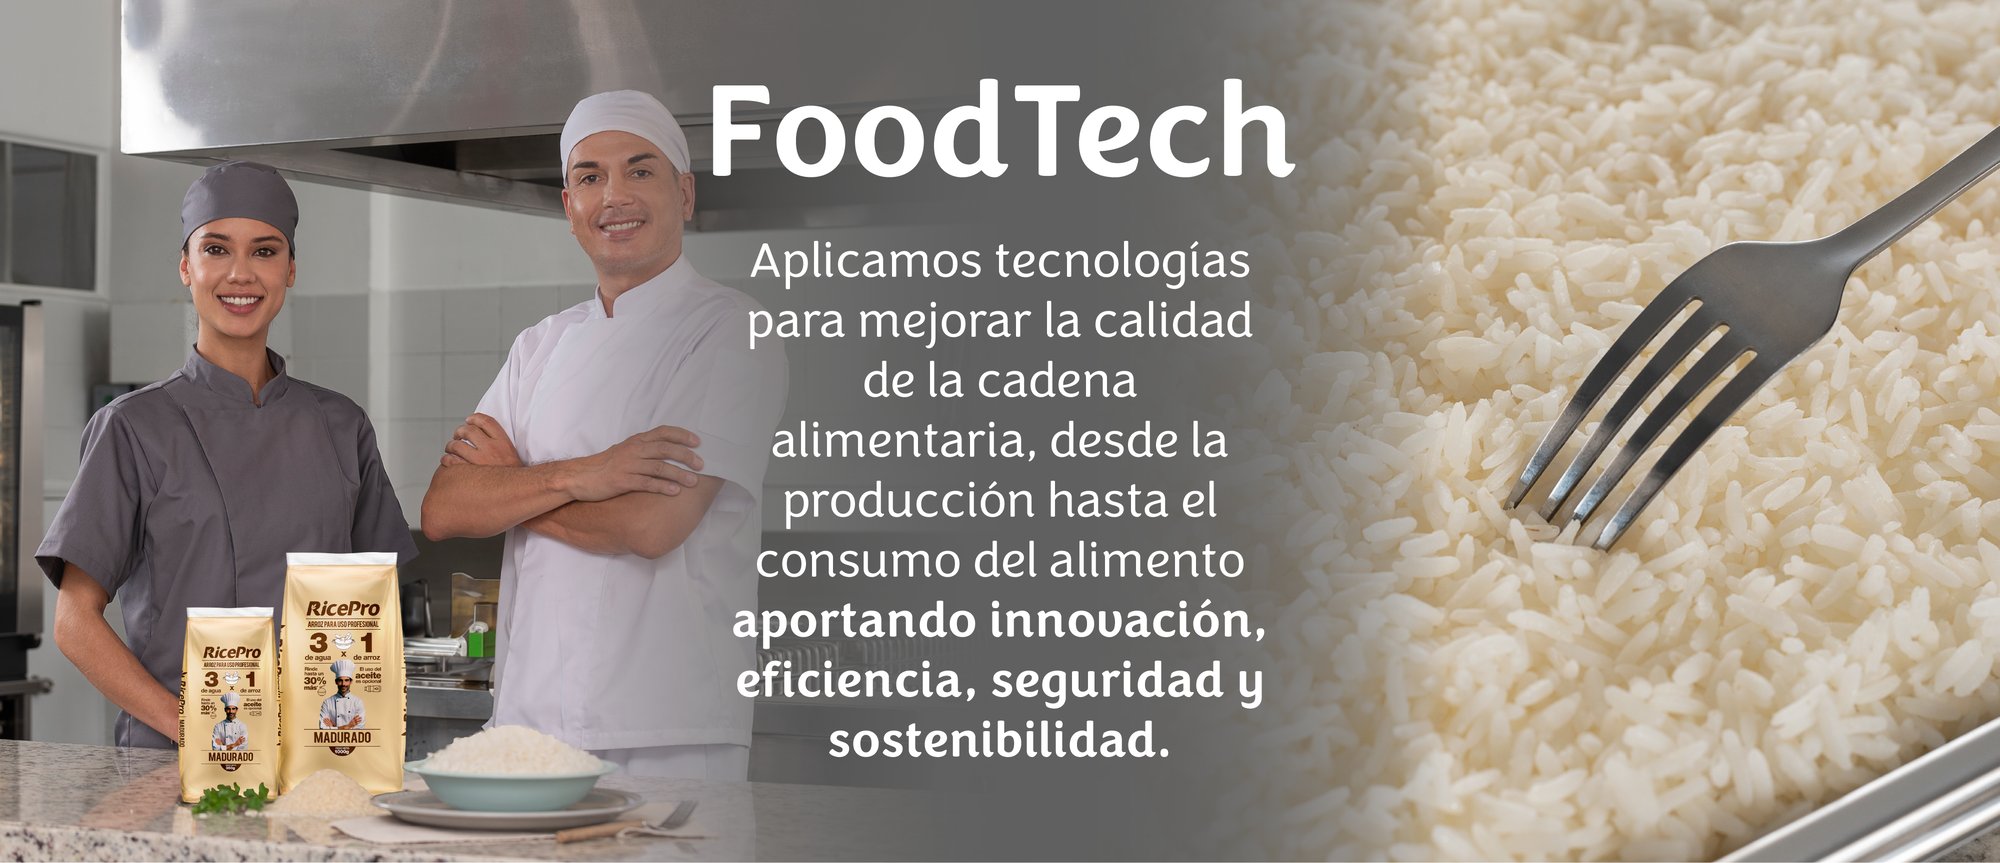 Foodtech Aplicamos tecnología para mejorar la calidad de la cadena alimentaria desde la producción hasta el consumo del alimento aportando innovación, eficiencia, seguridad y sostenibilidad.